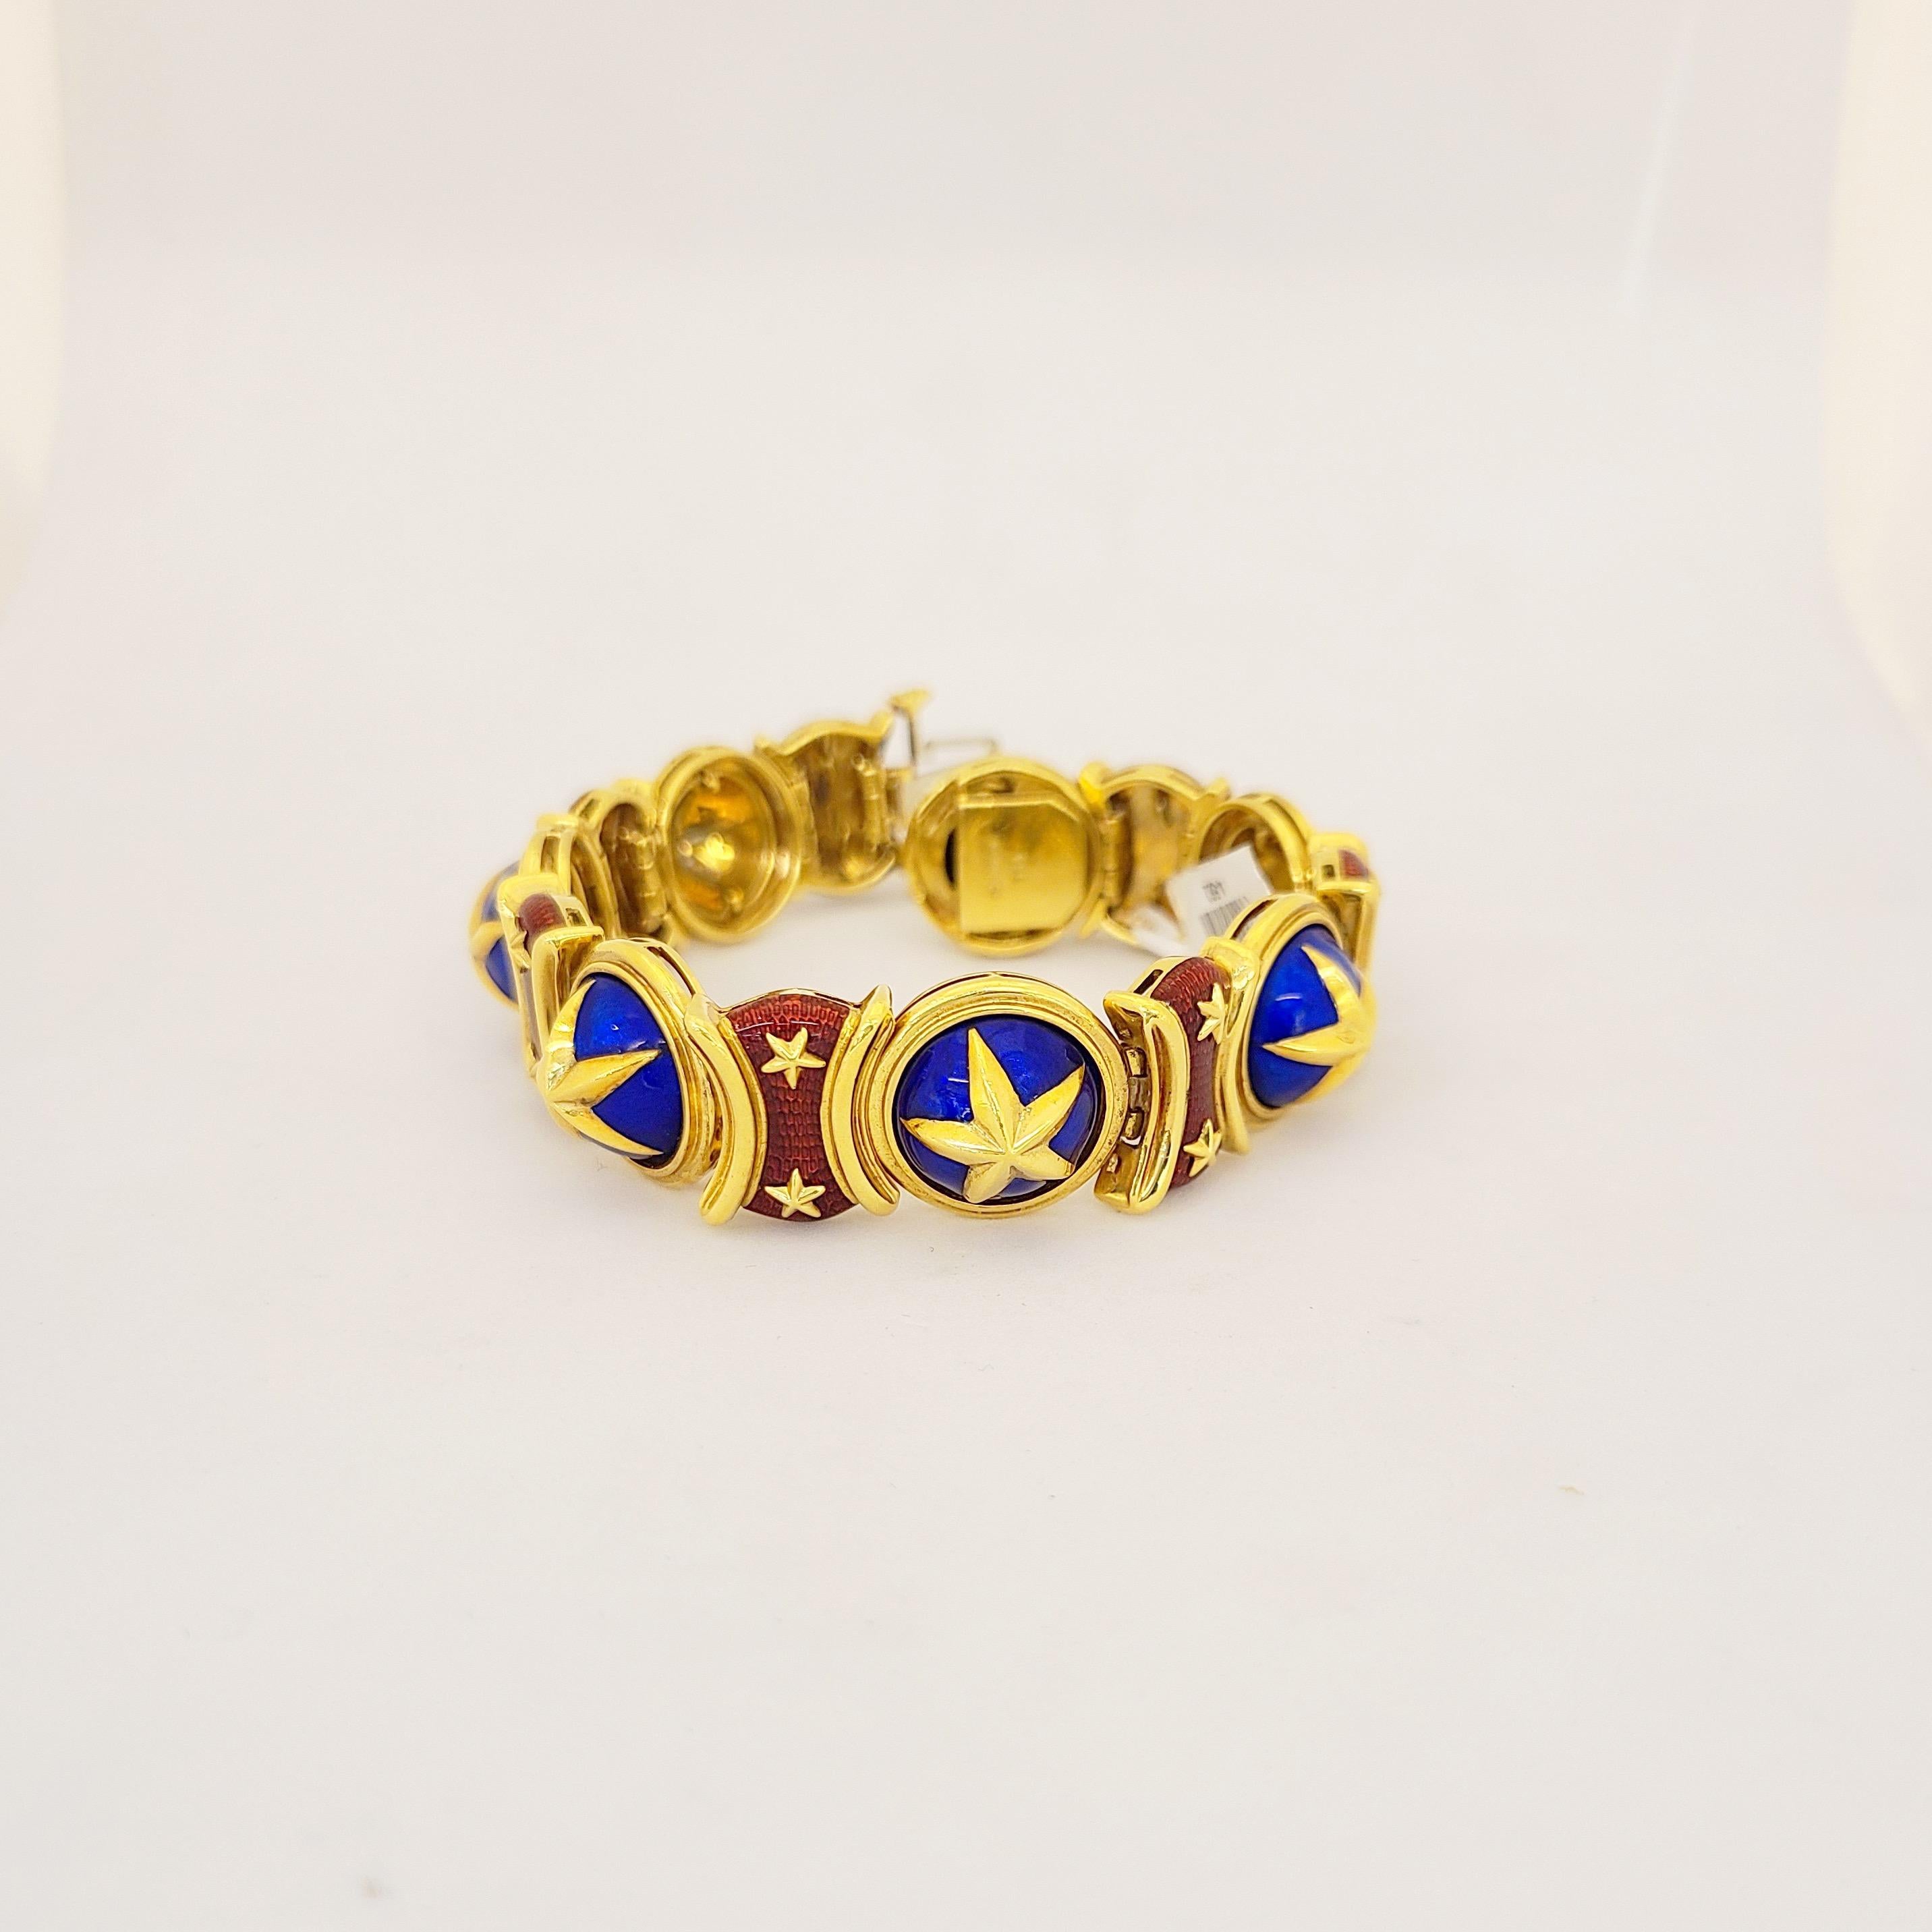 Klassisches Armband aus 18 Karat Gelbgold mit 14  abwechselnd emaillierte Glieder. Eine schöne  goldstern-Motiv  auf leuchtend blauem und rotem guicholierten Email. Das Armband misst 7,5